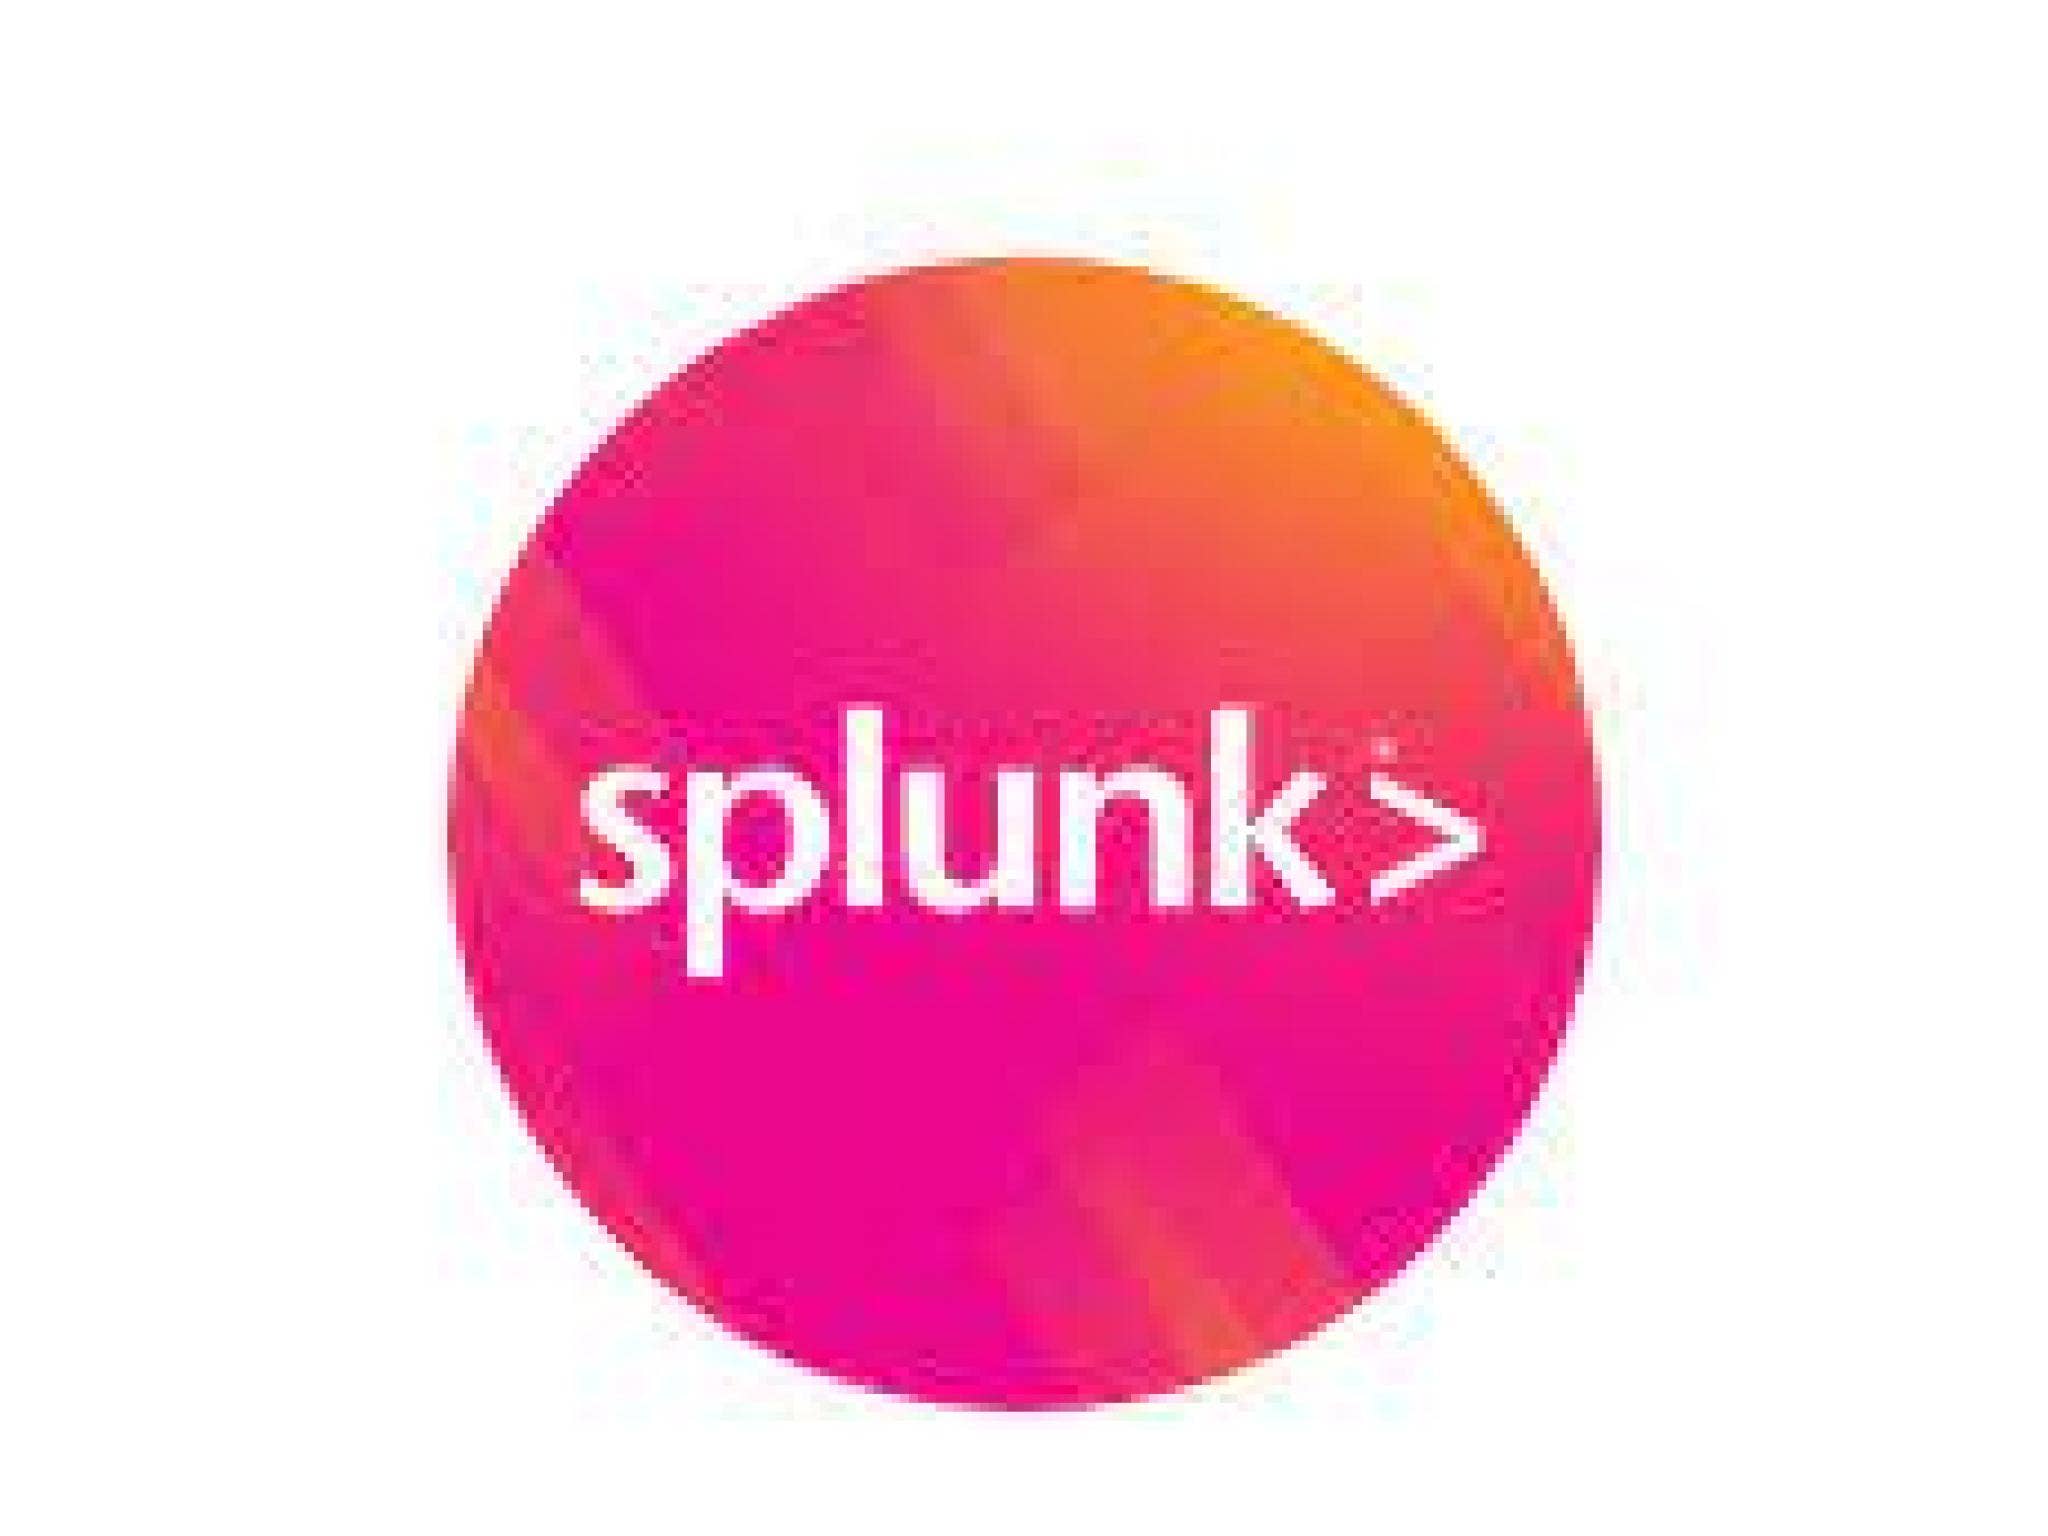 After Q2 Beat, Splunk Raises FY23 Revenue Outlook But Revises ARR Downwards